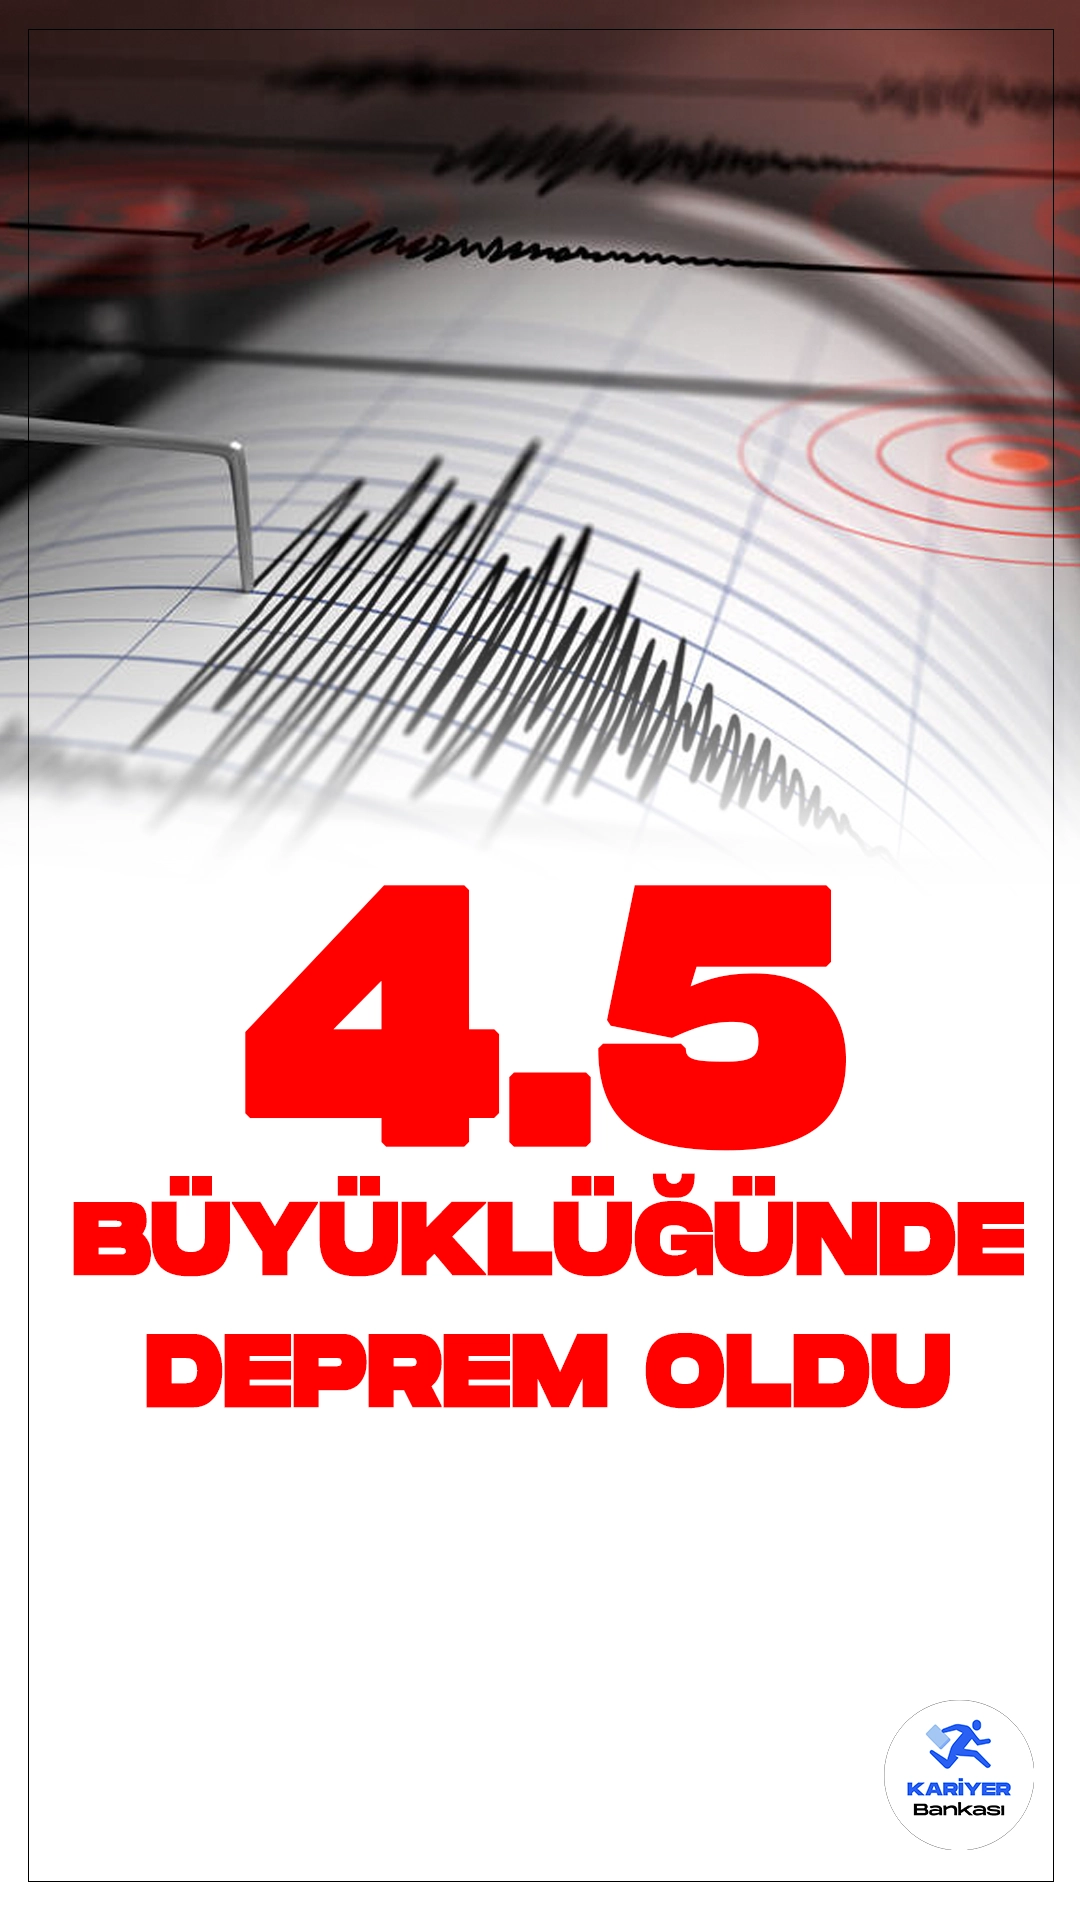 Son Dakika: İzmir'de 4.5 Büyüklüğünde Deprem Oldu.İçişleri Bakanlığı Afet ve Acil Durum Yönetimi Başkanlığı Deprem Dairesi tarafından yayımlanan son dakika verilerine göre, İzmir'in Seferihisar ilçesinde 4.5 büyüklüğünde deprem meydana geldi.